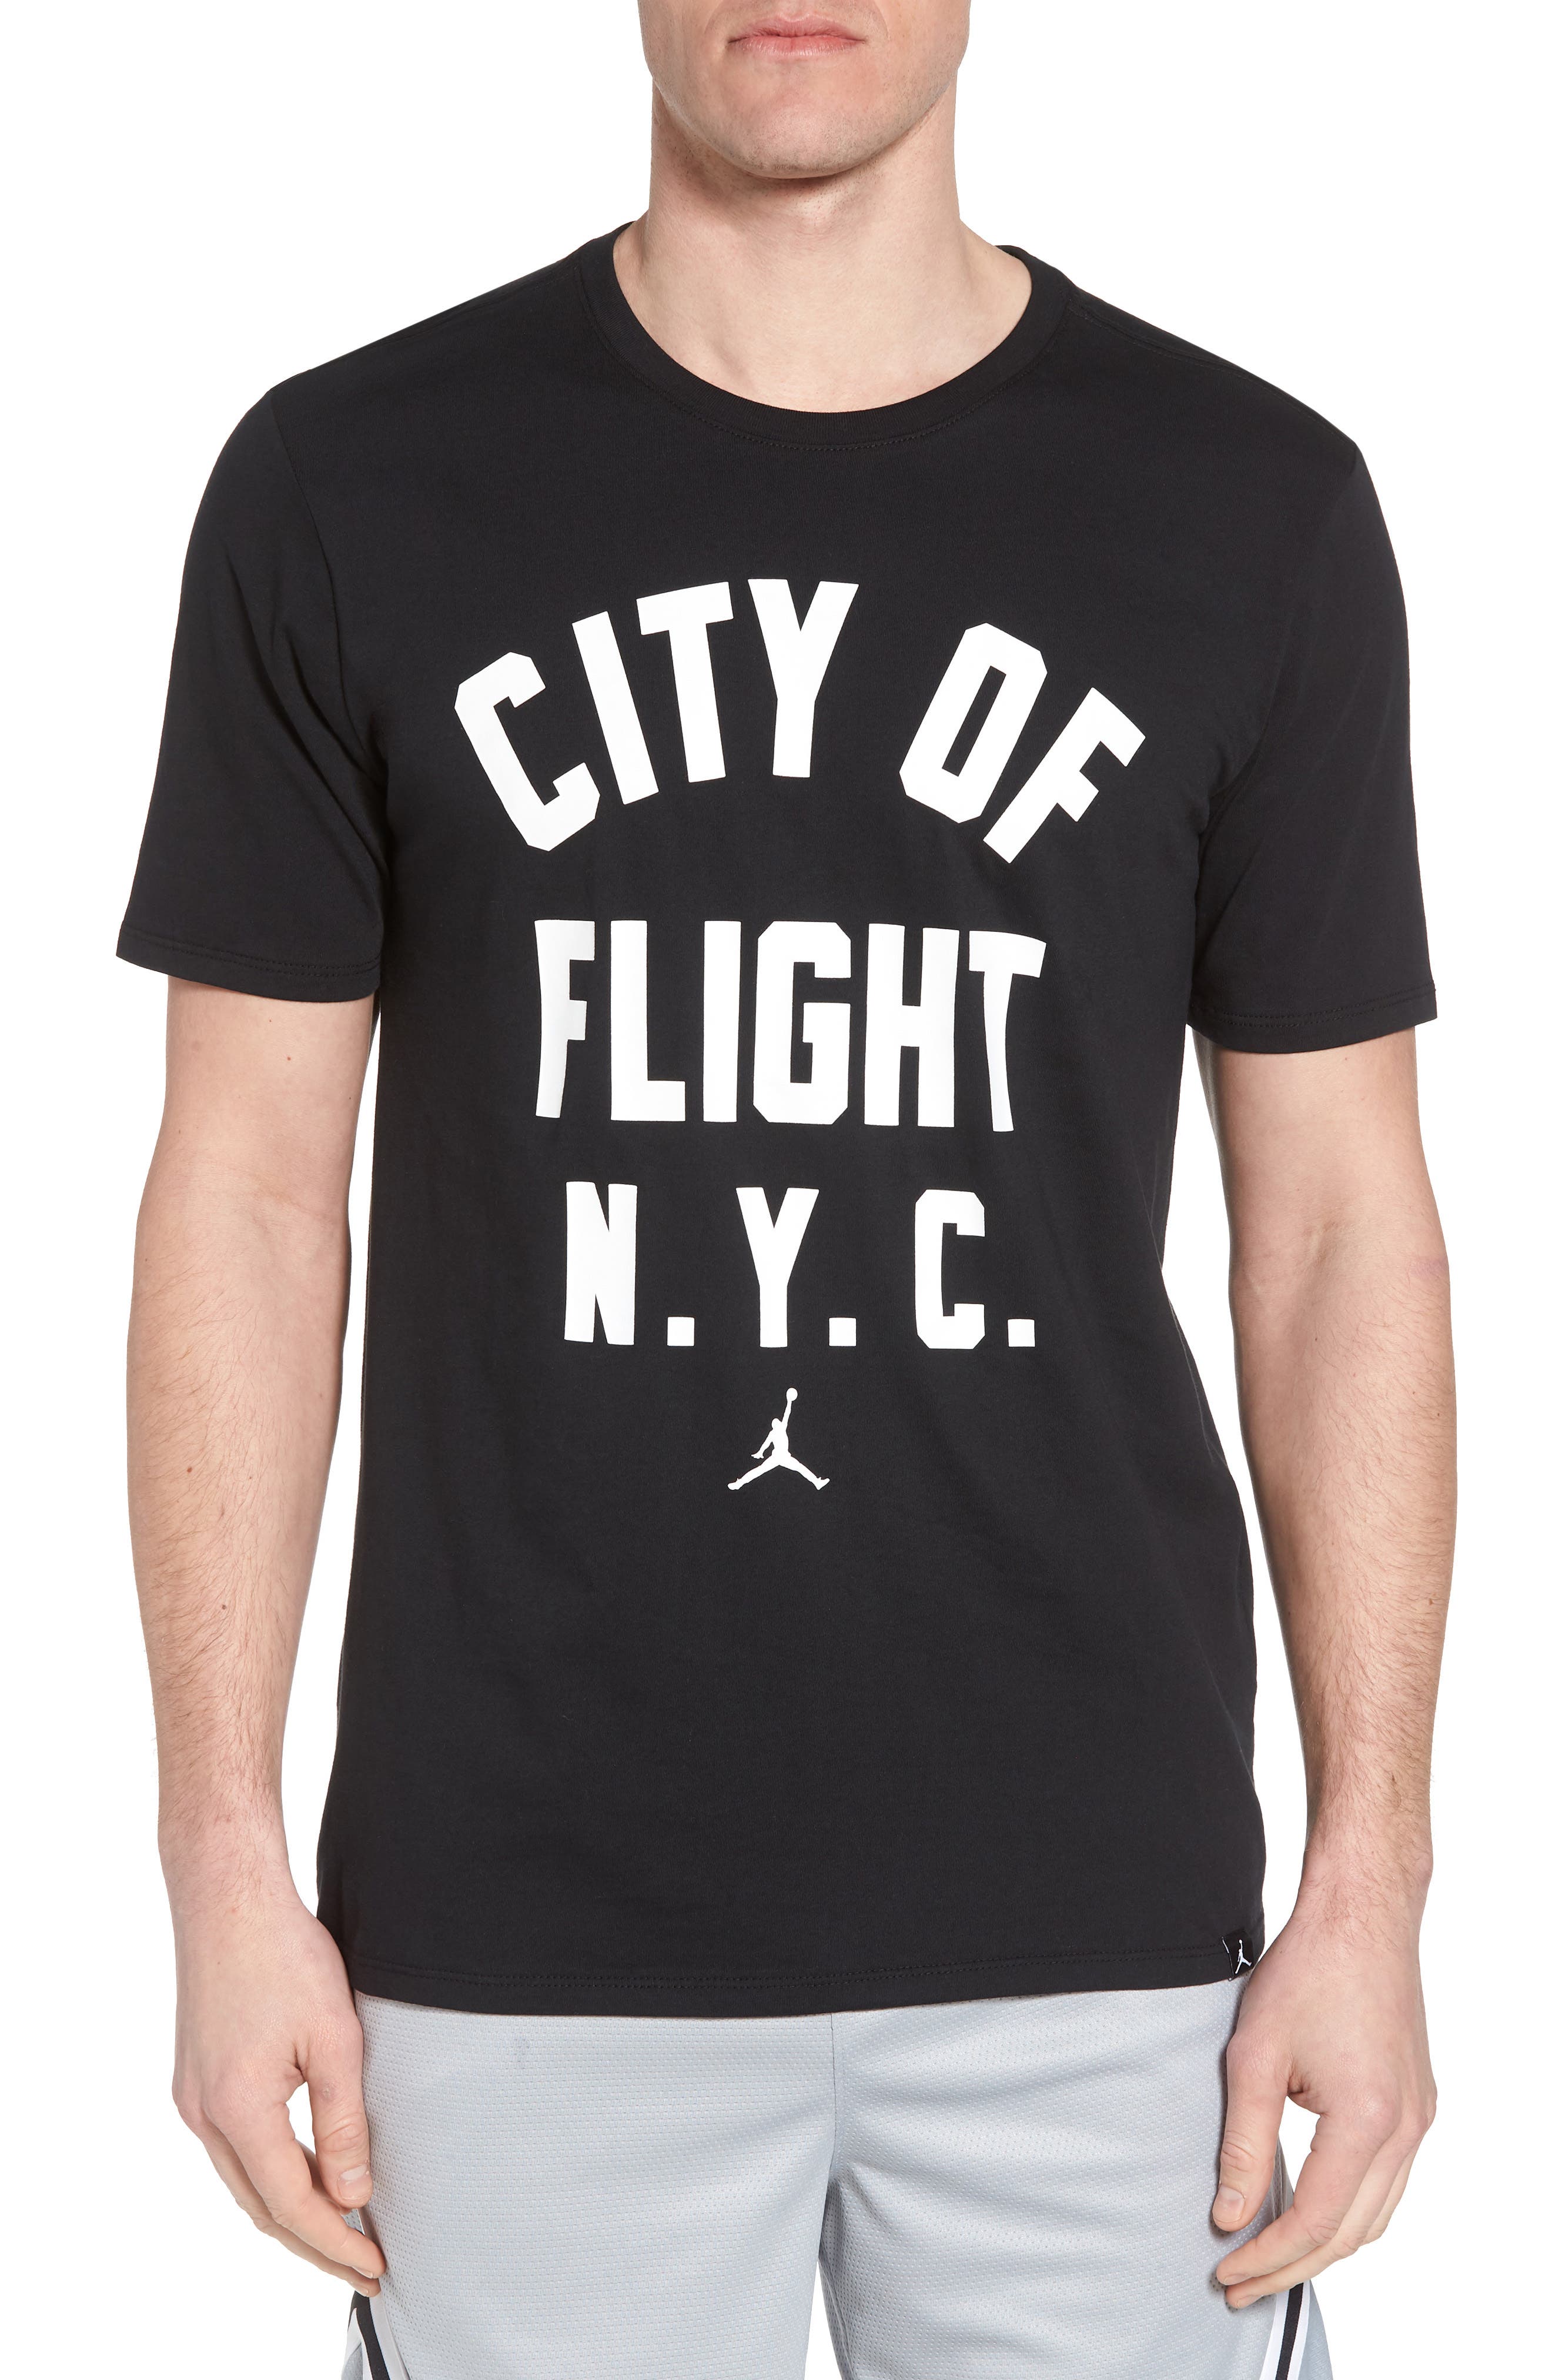 city of flight t shirt